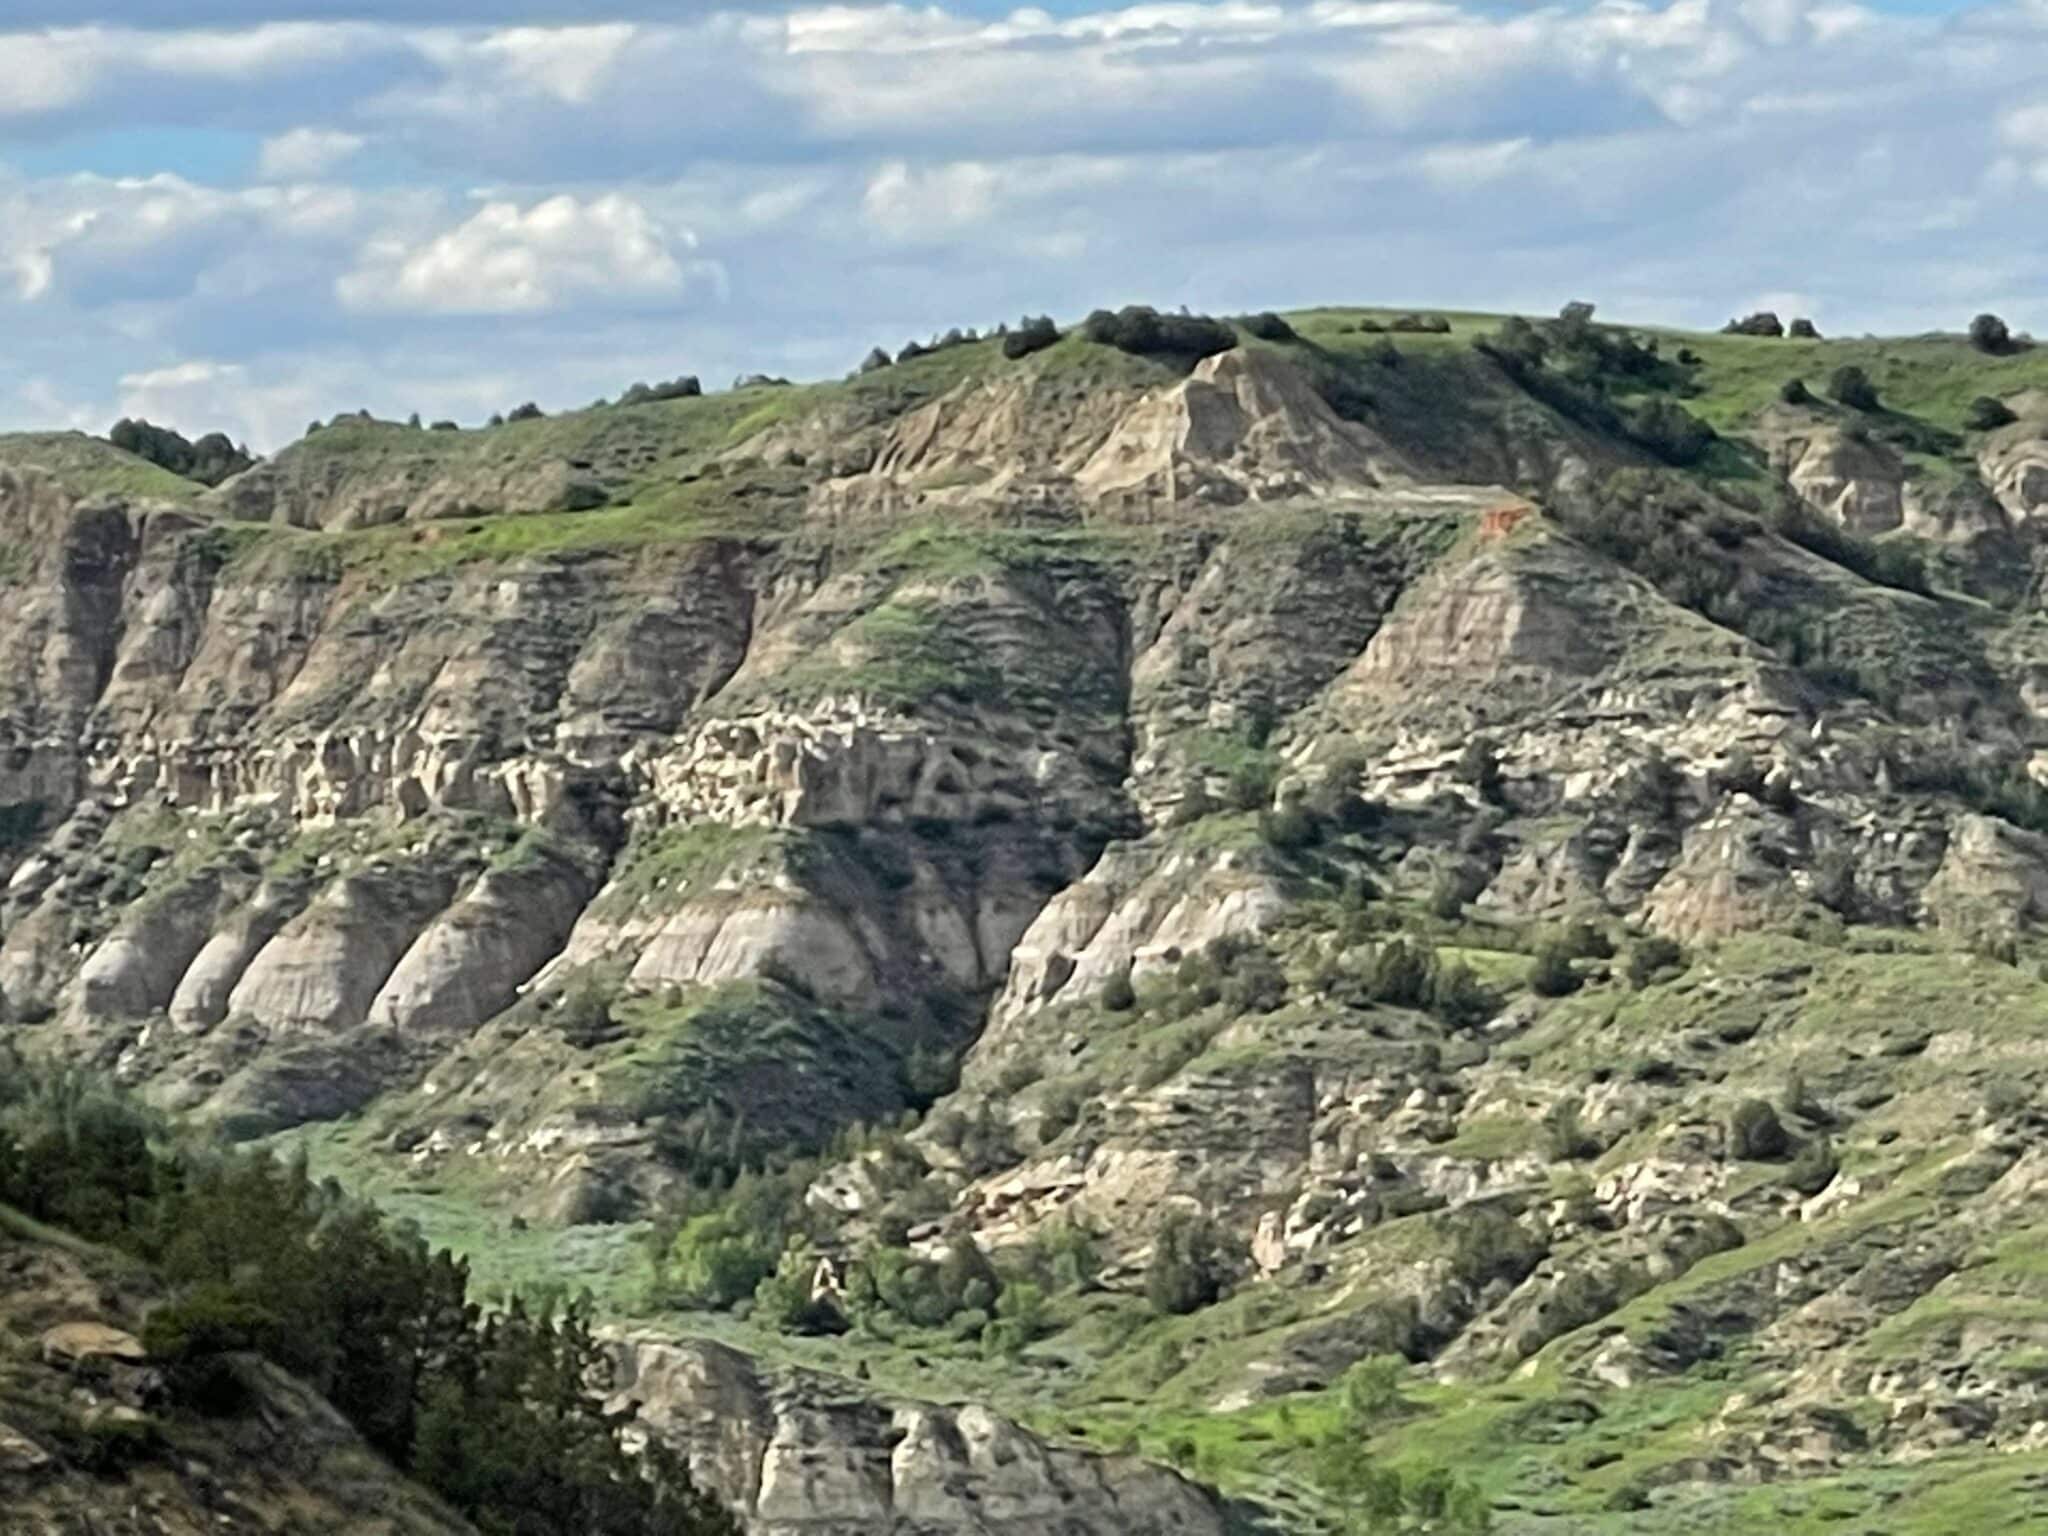 Geological formation in the Badlands, Theodore Roosevelt National Park, Medora, North Dakota